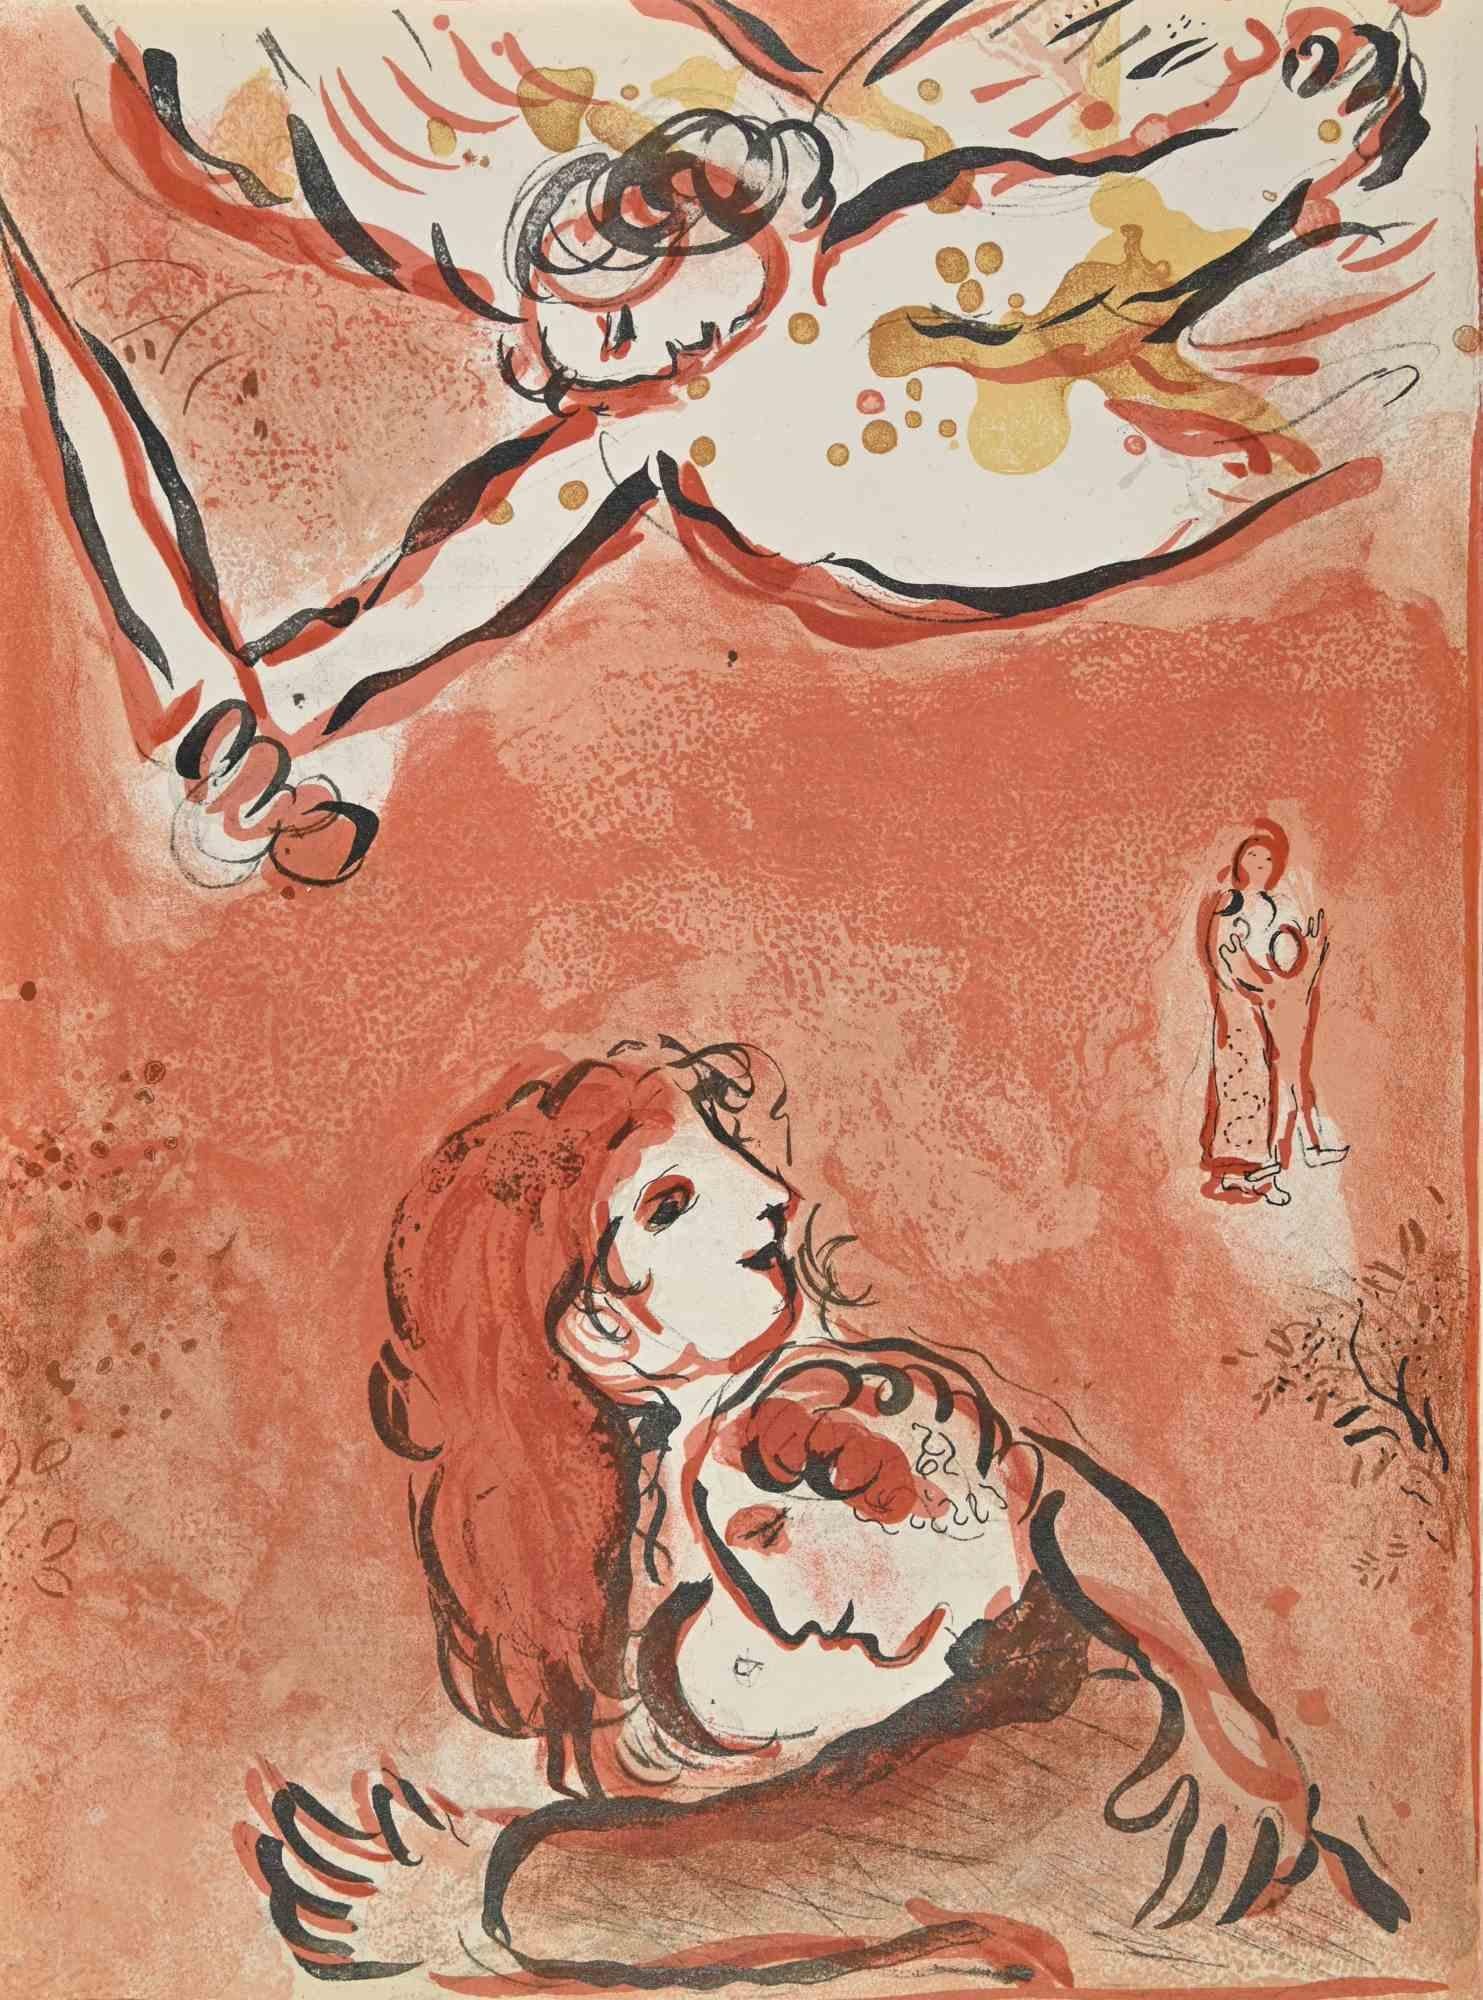 Le visage d'Israël est une œuvre d'art de la série "La Bible", réalisée par Marc Chagall en 1960.

Lithographie en couleurs mélangées sur papier brun, sans signature.

Édition de 6500 lithographies non signées. Imprimé par Mourlot et publié par